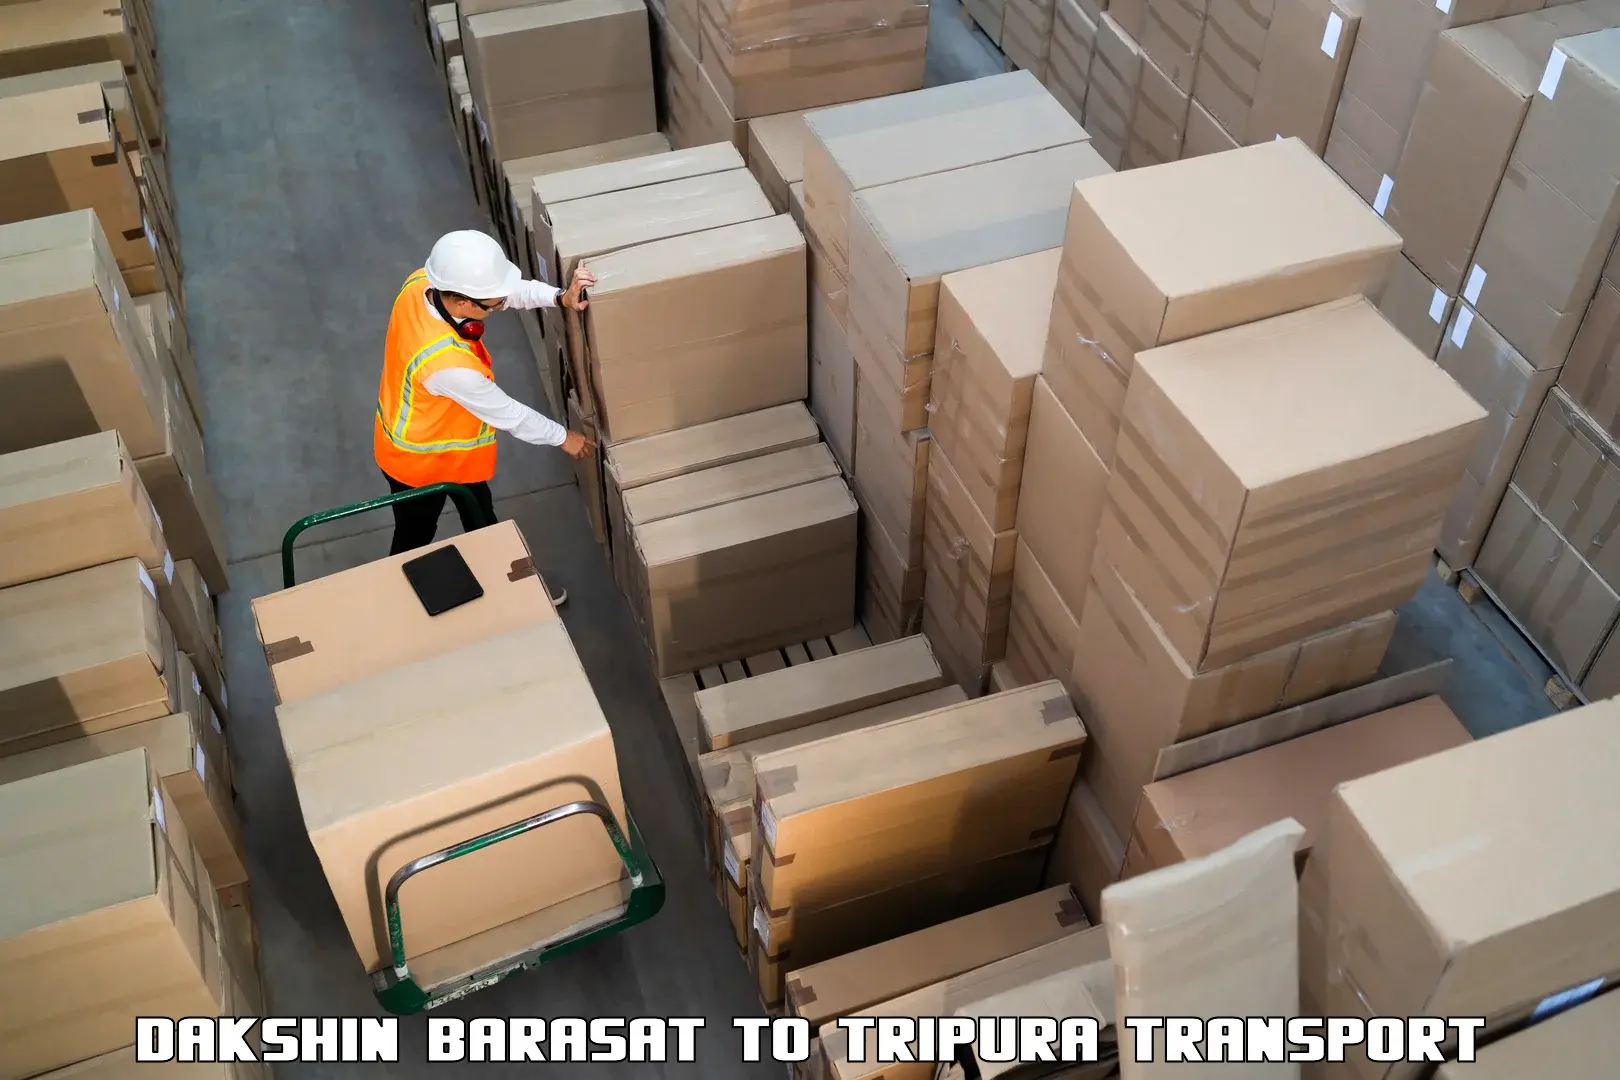 Furniture transport service Dakshin Barasat to Dharmanagar